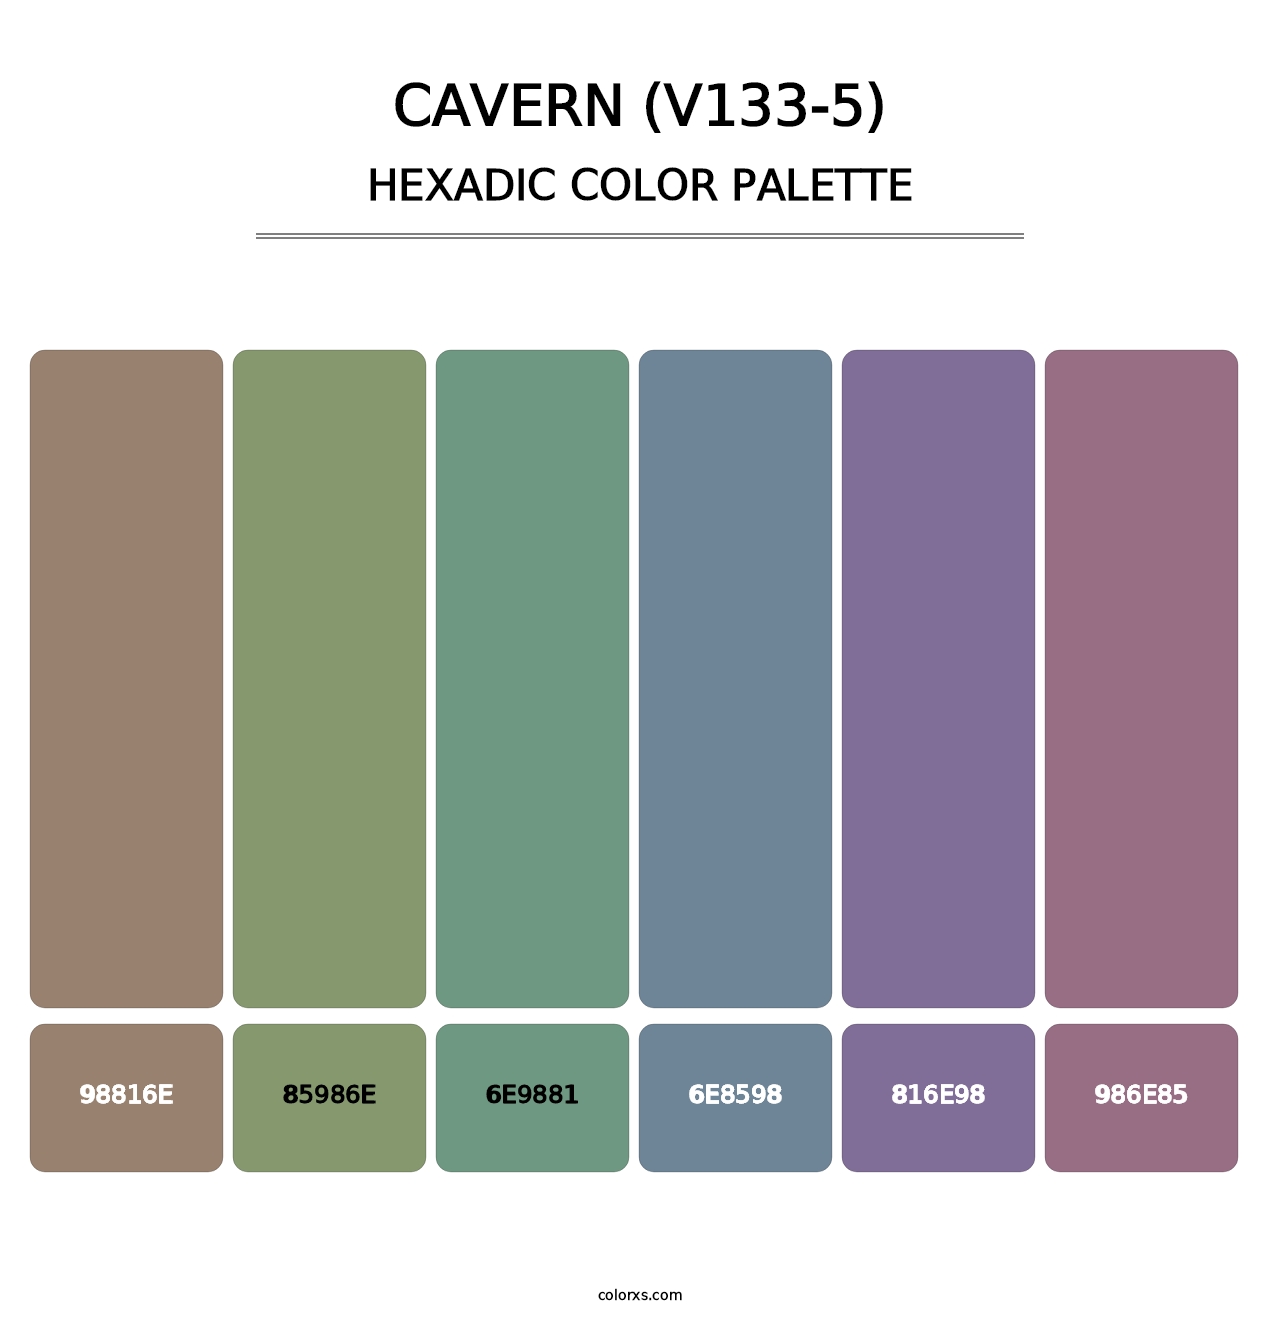 Cavern (V133-5) - Hexadic Color Palette